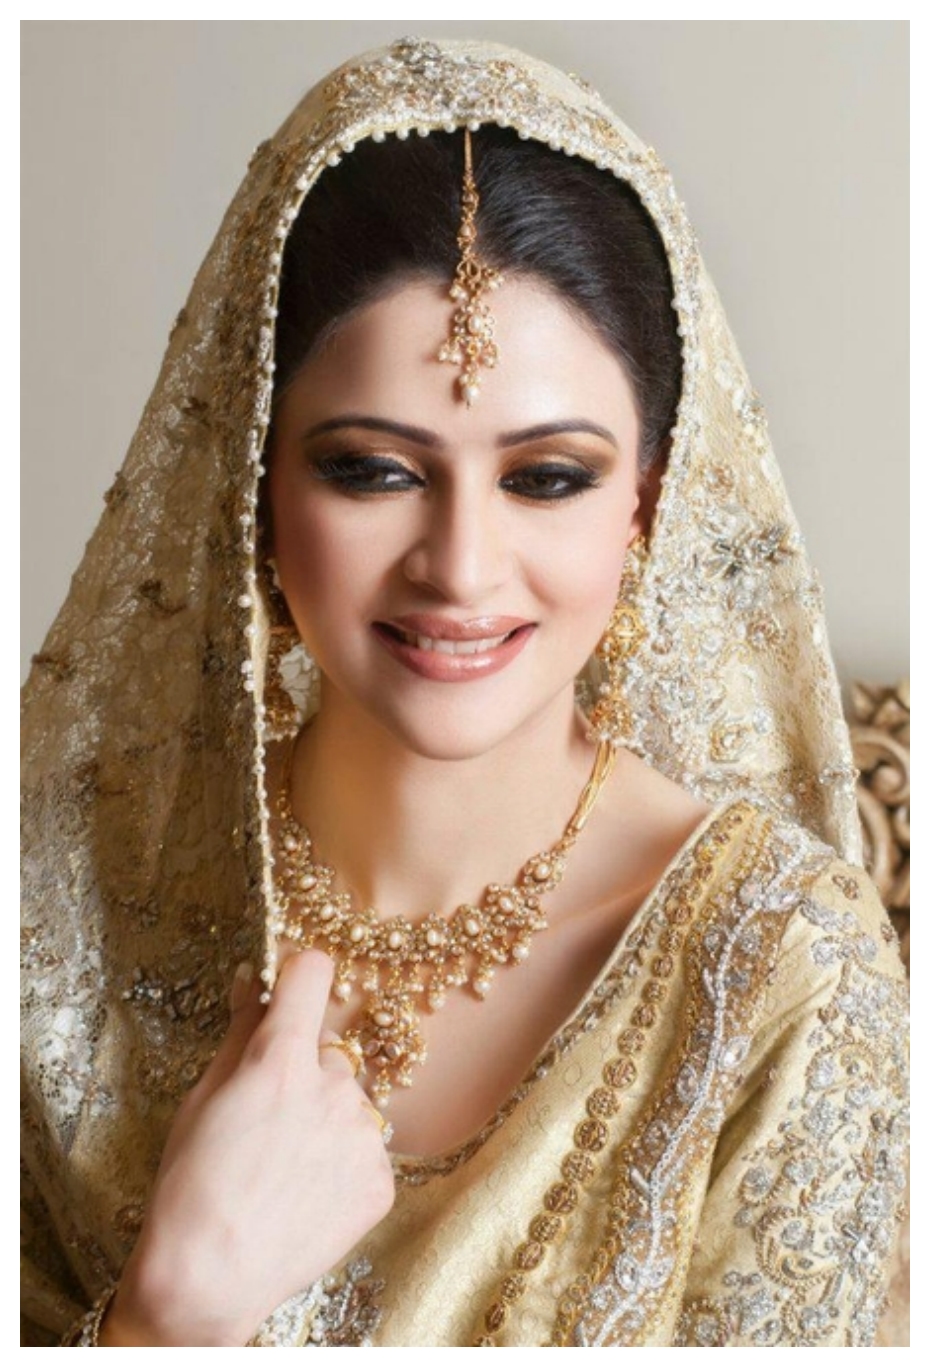 pakistani bridal dresses in white 2013 – fashion dresses